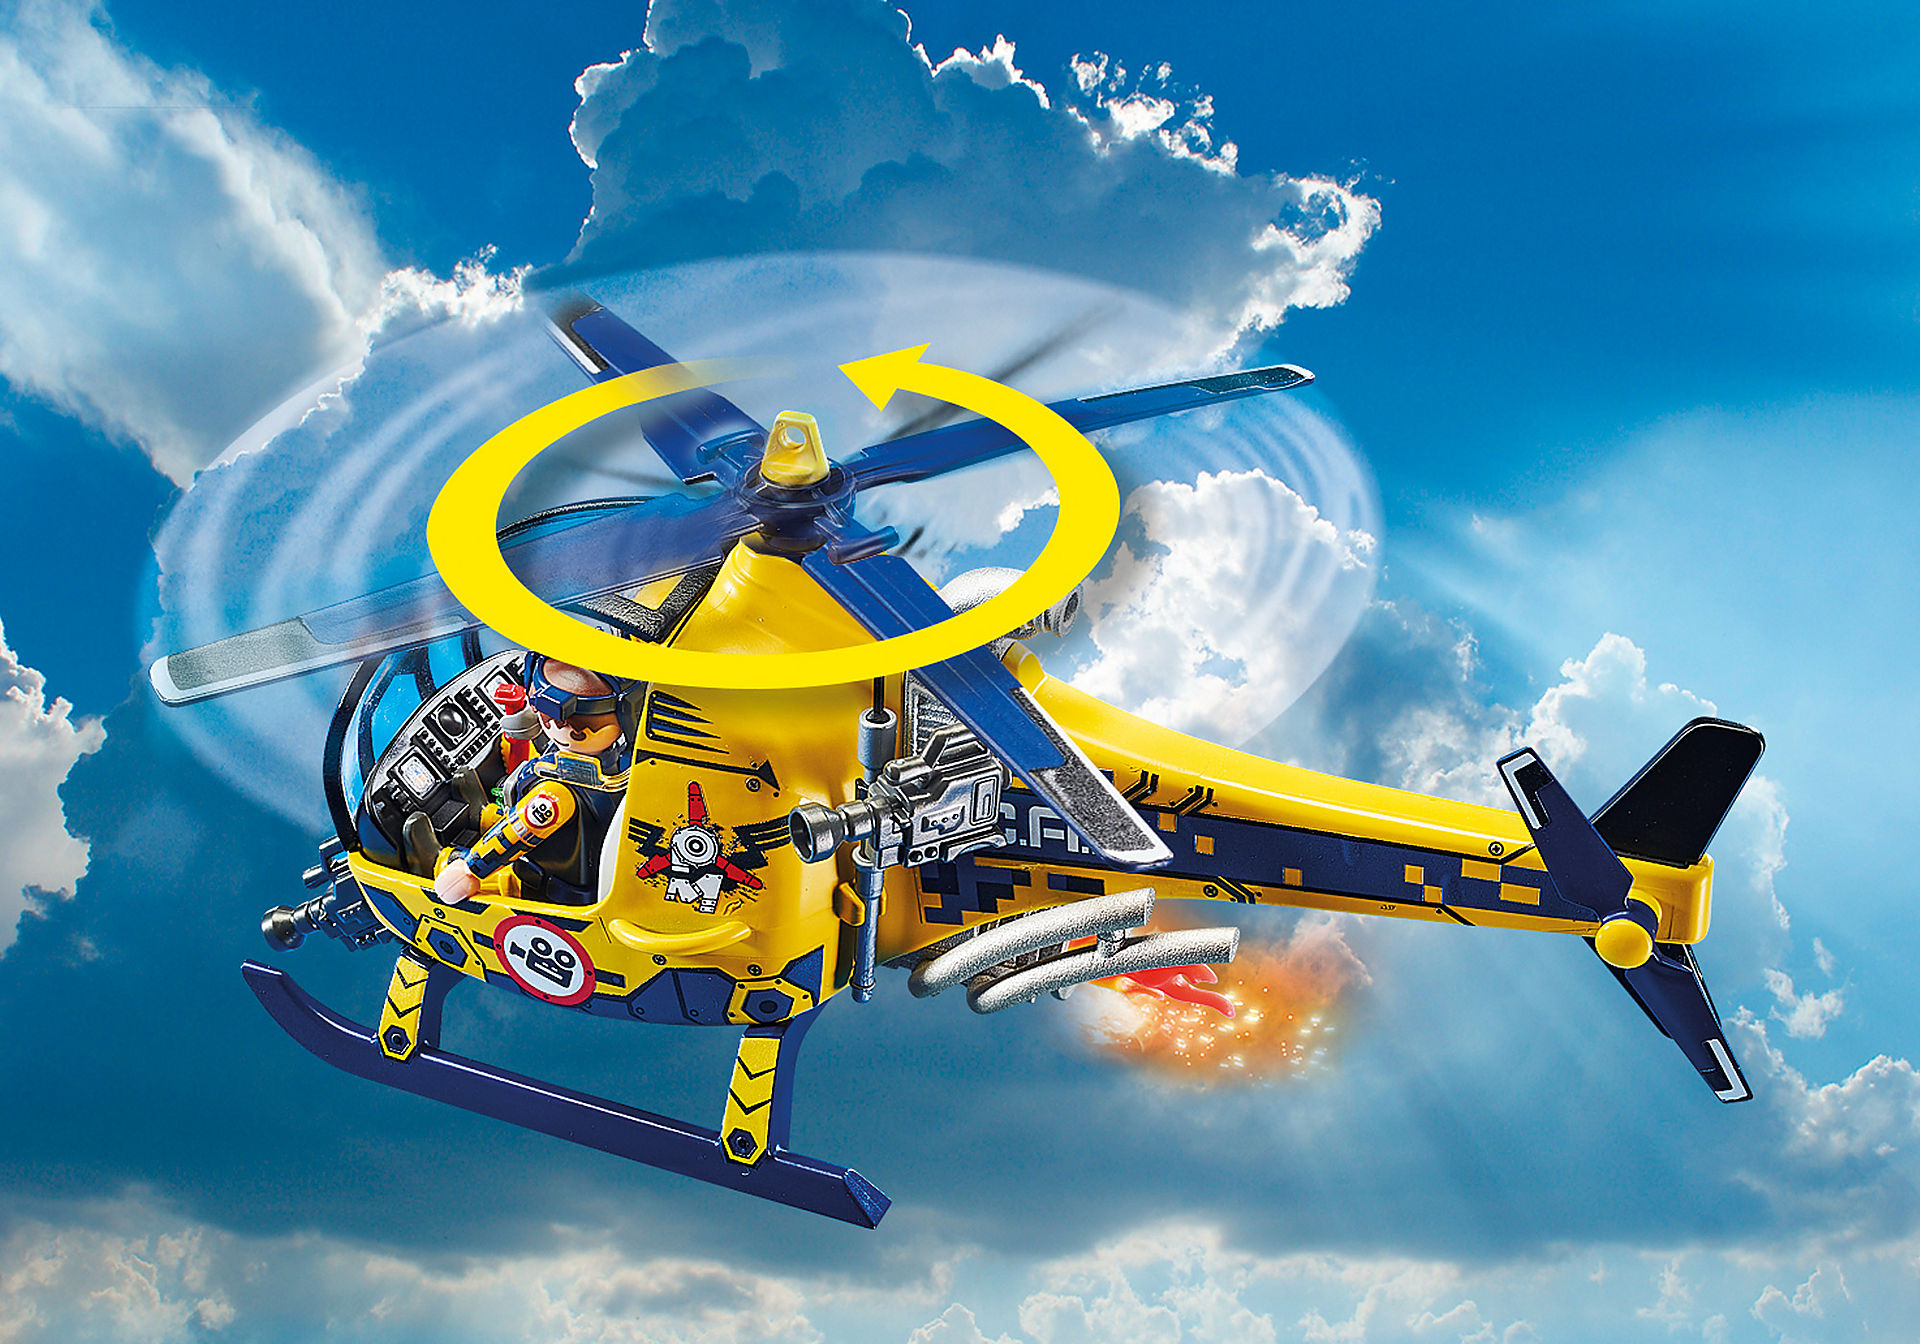 70833 Air Stuntshow filmhold-helikopter zoom image5